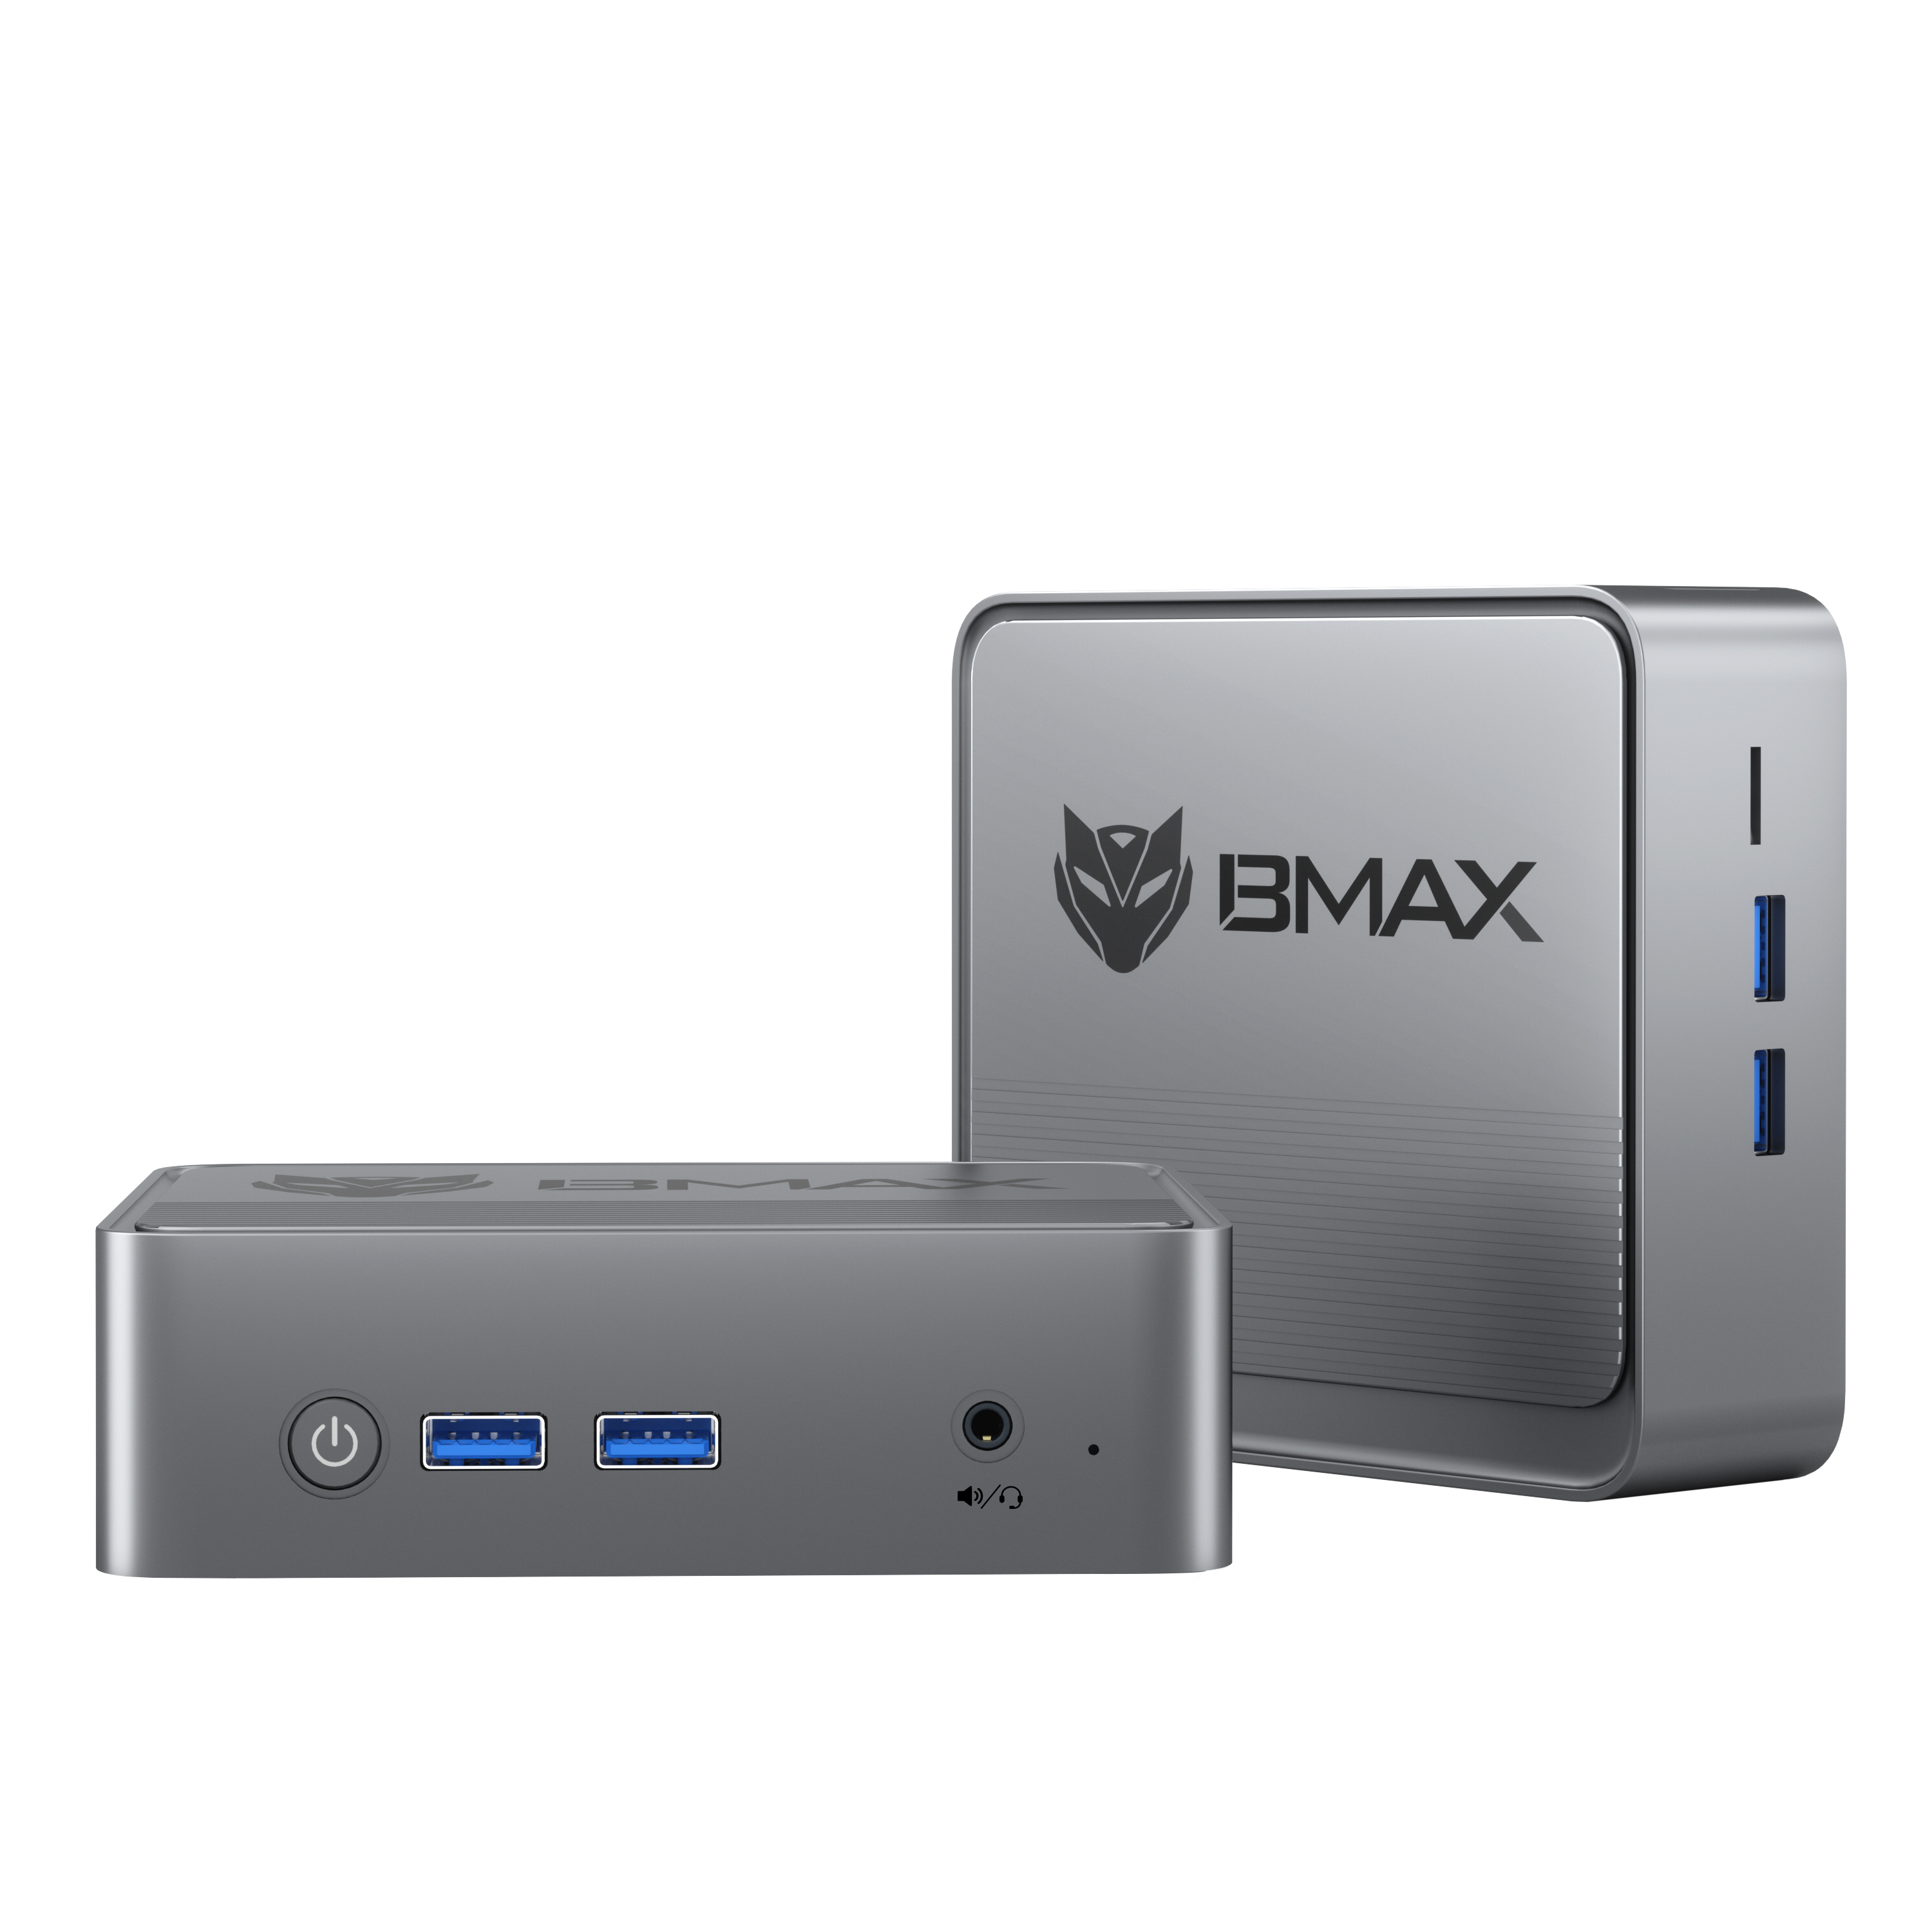 ¡Diseño innovador, superando las expectativas!BMAX Mini PC B3（Nuevo）, un mini PC empresarial de alta gama con excelente rendimiento y conveniente expansión de almacenamiento！